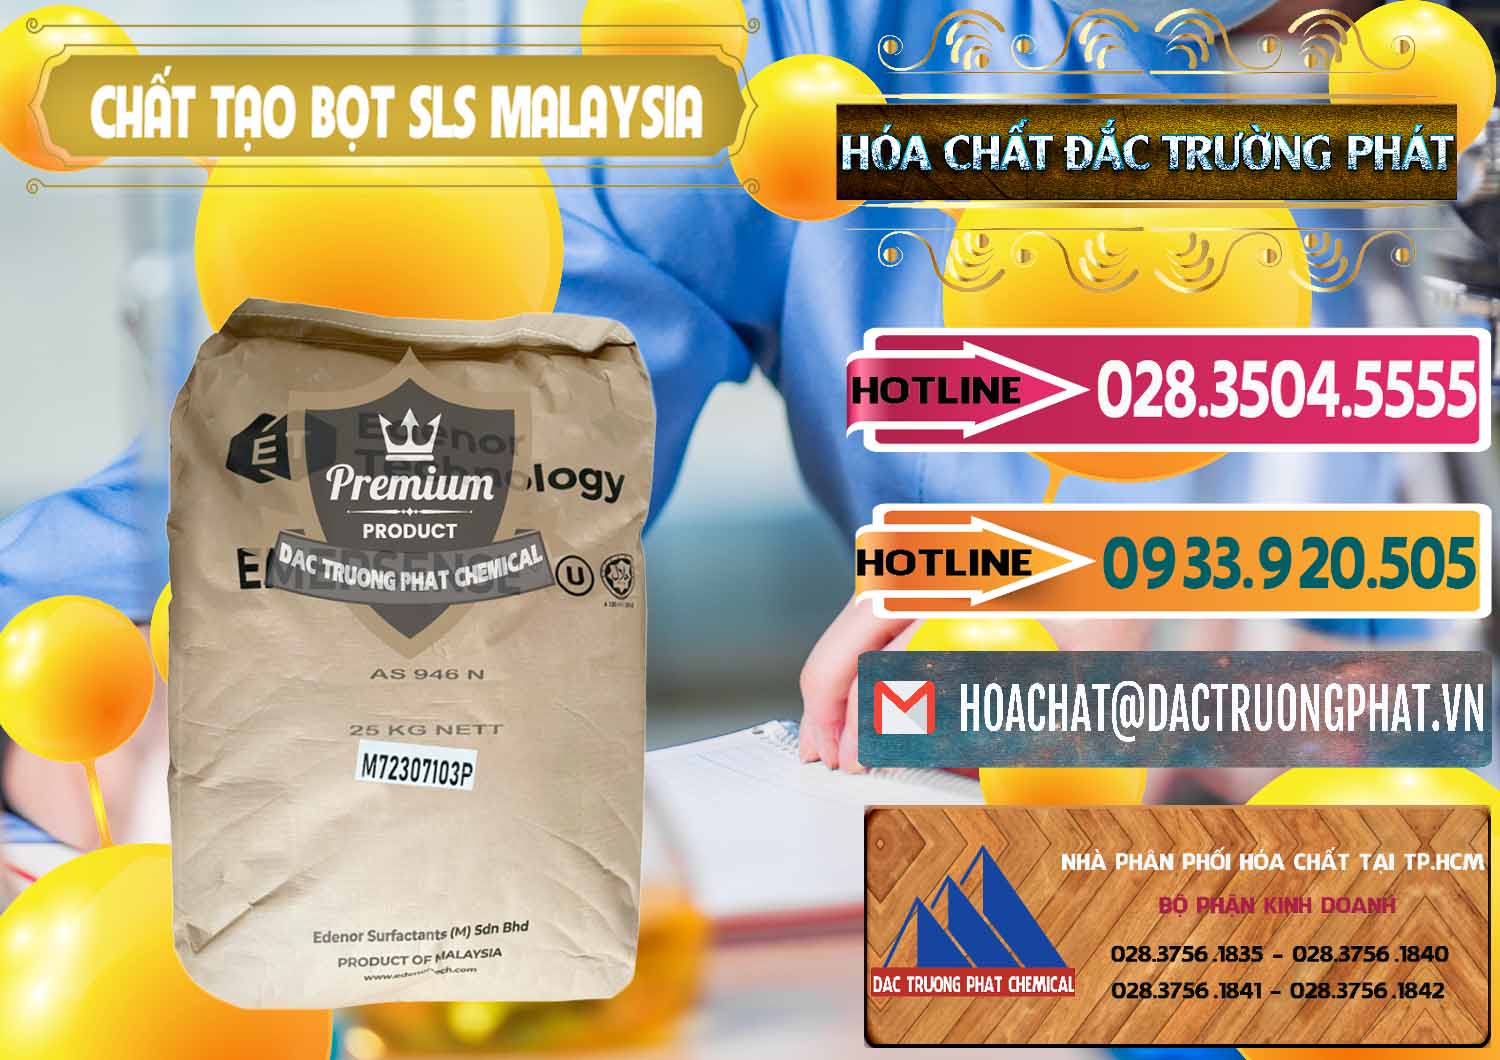 Cty chuyên cung cấp _ bán Chất Tạo Bọt SLS Emersense Mã Lai Malaysia - 0381 - Công ty nhập khẩu _ cung cấp hóa chất tại TP.HCM - dactruongphat.vn